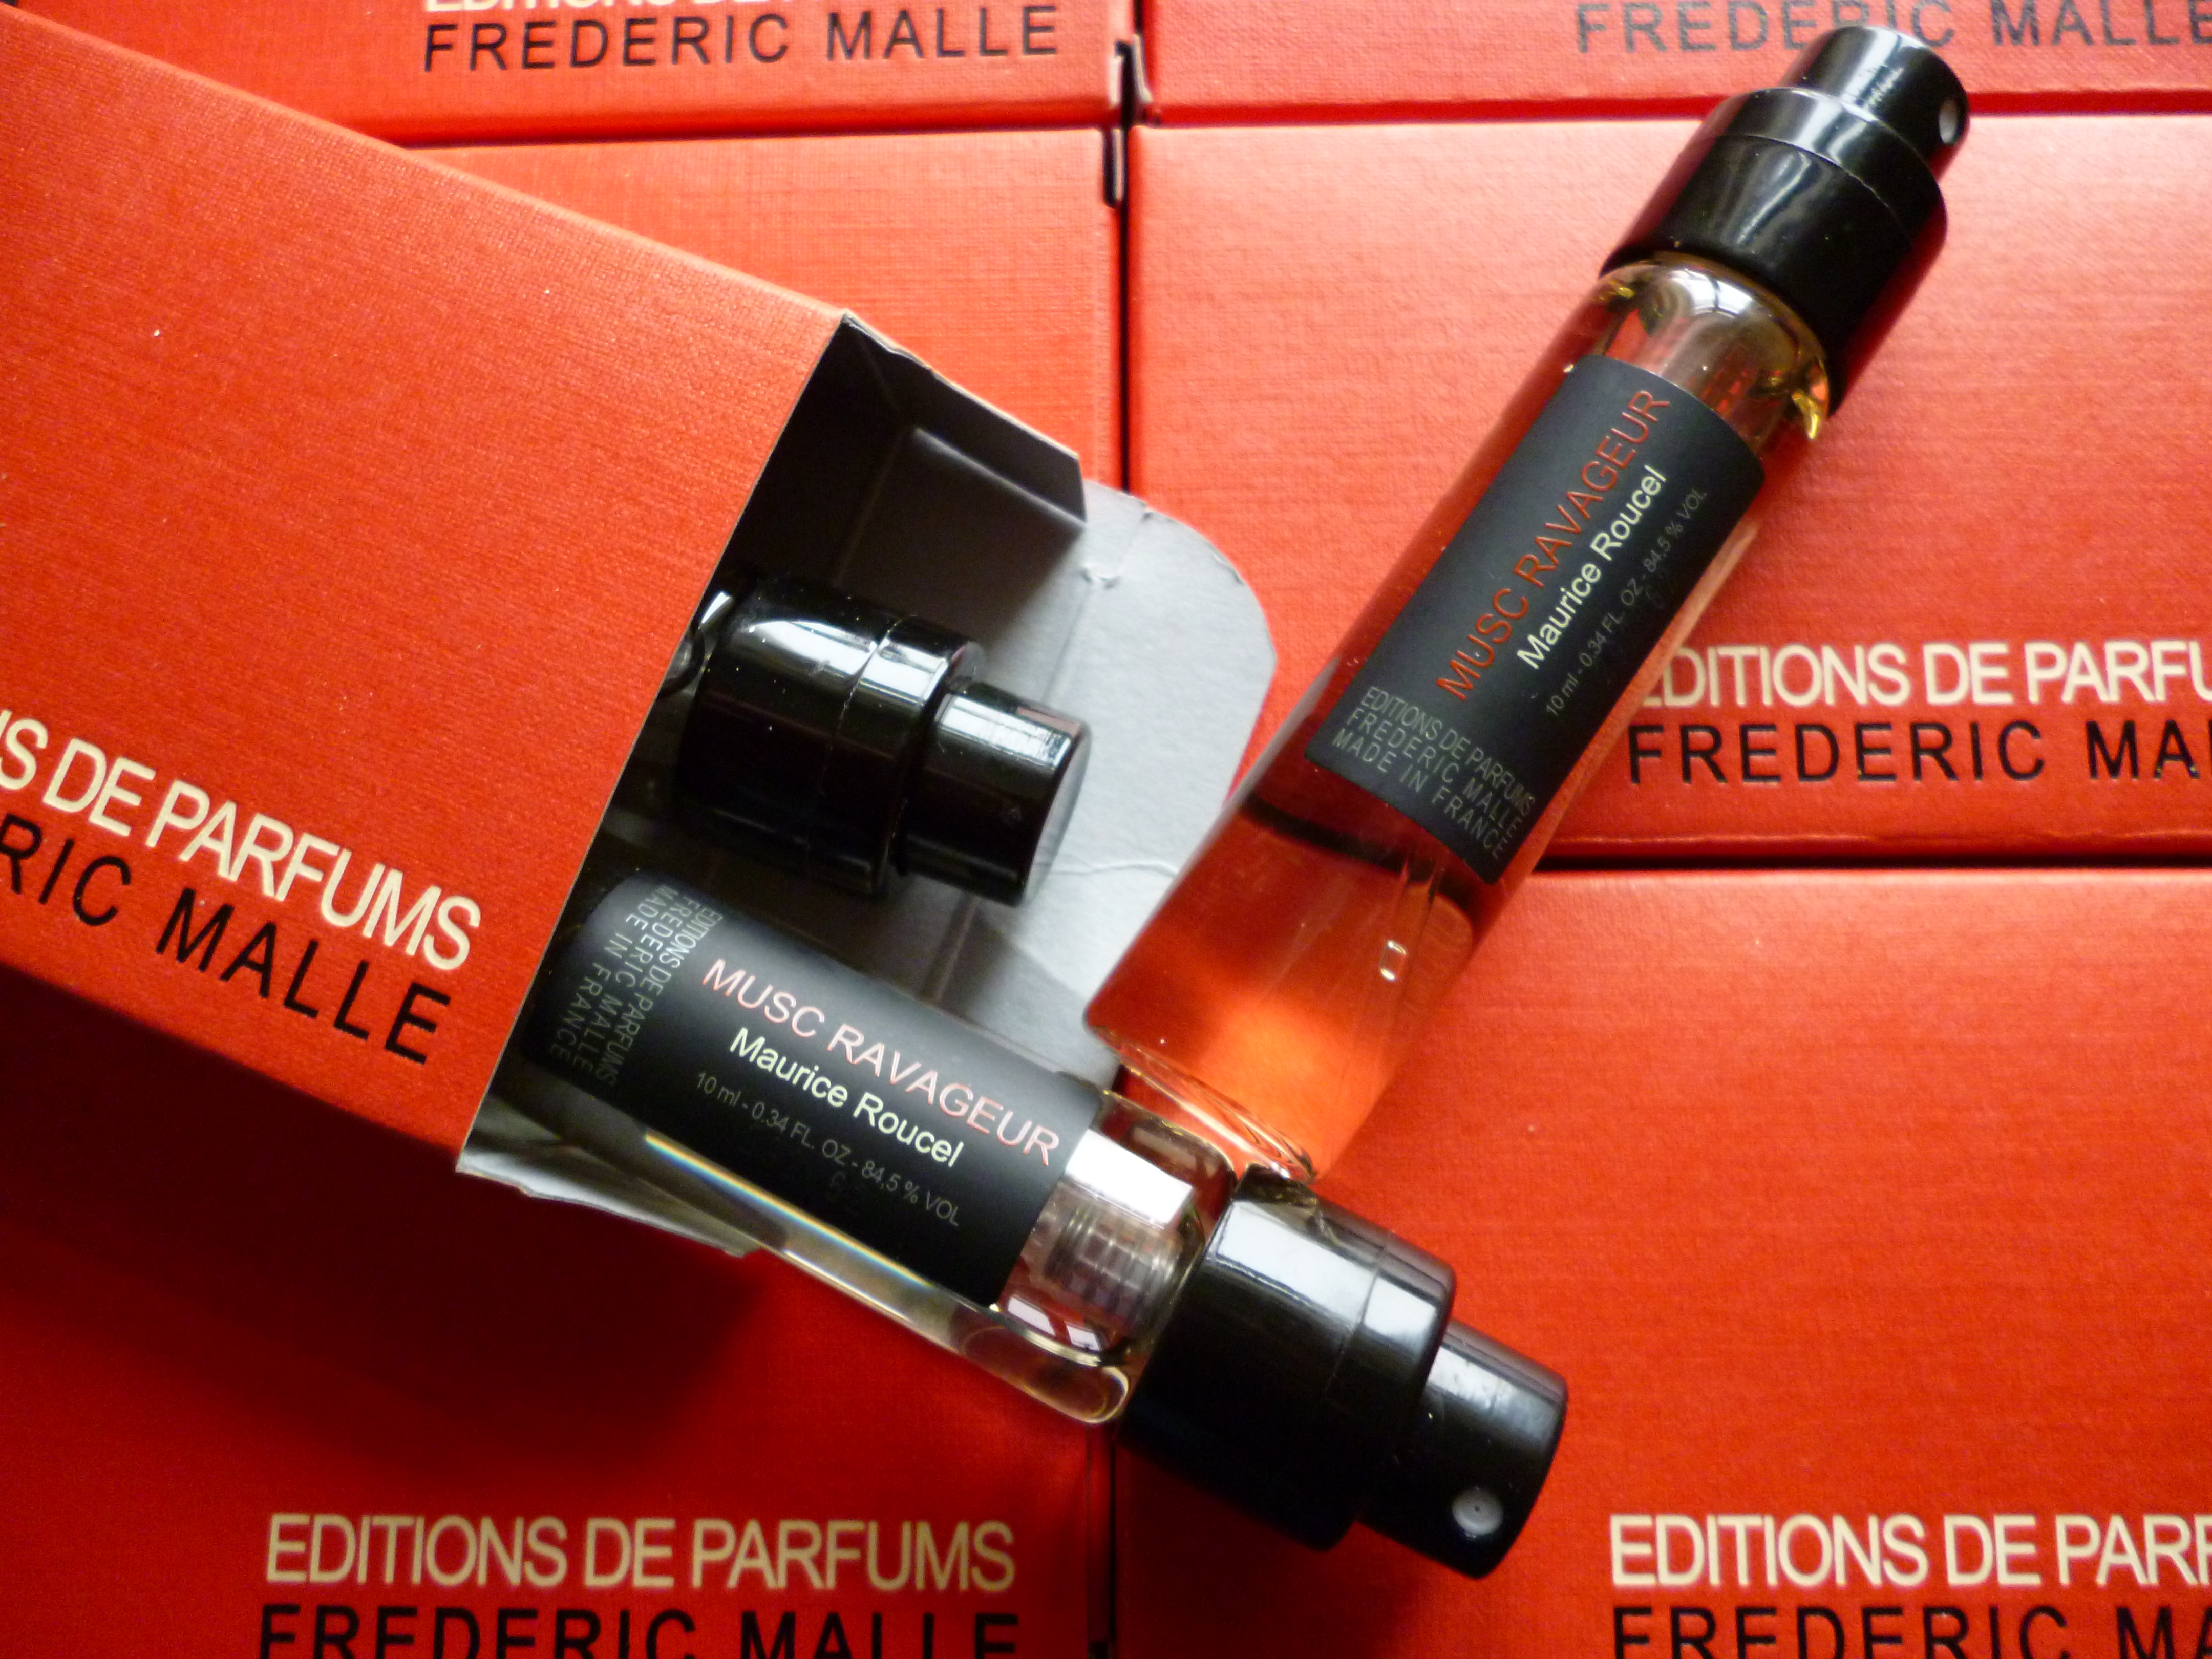 Frederic Malle Editions de Parfums Musc Ravageur travel set